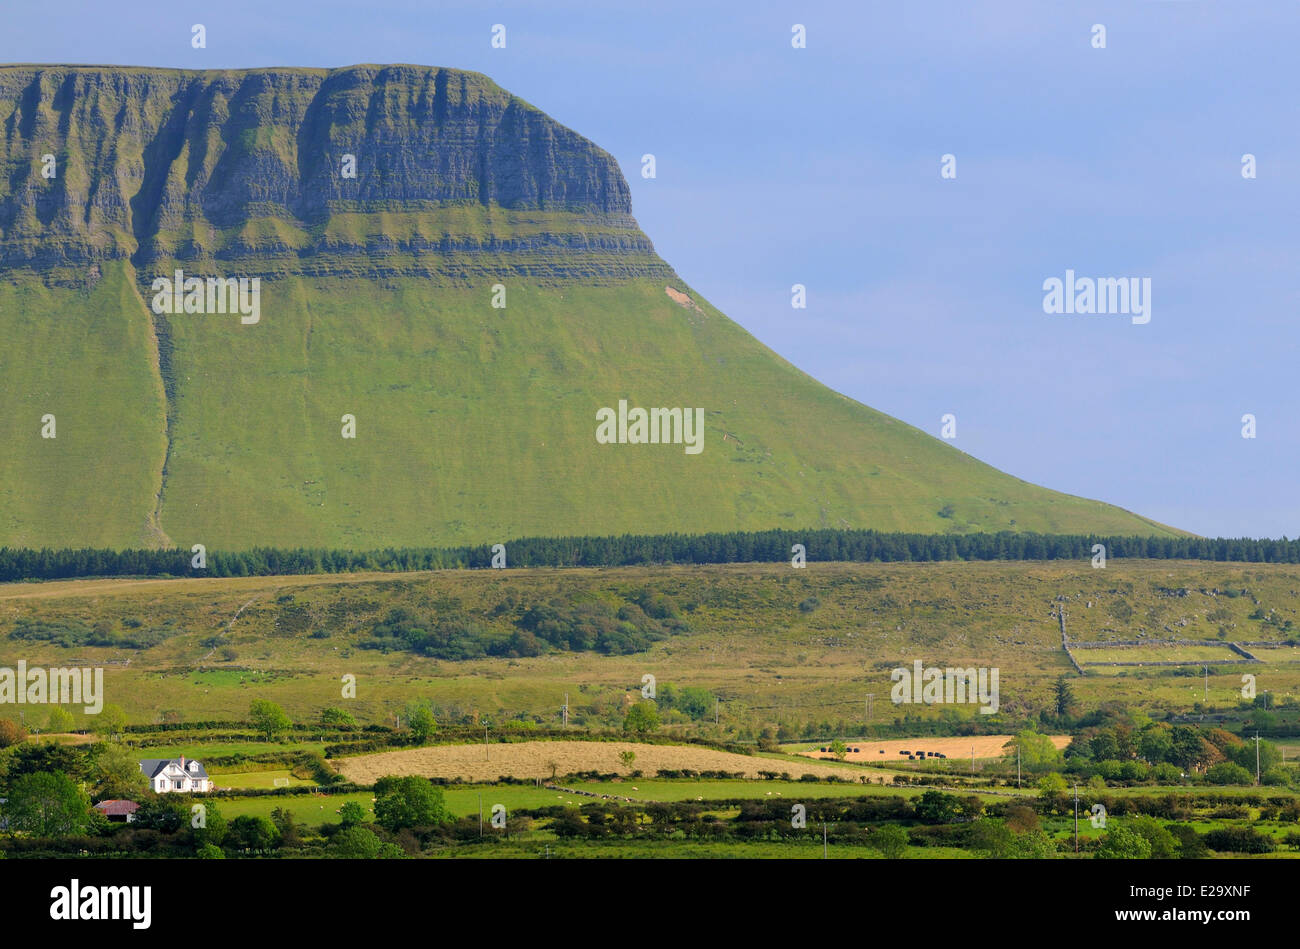 Ireland, County Sligo, Yeats country, Ben Bulben mountain Stock Photo